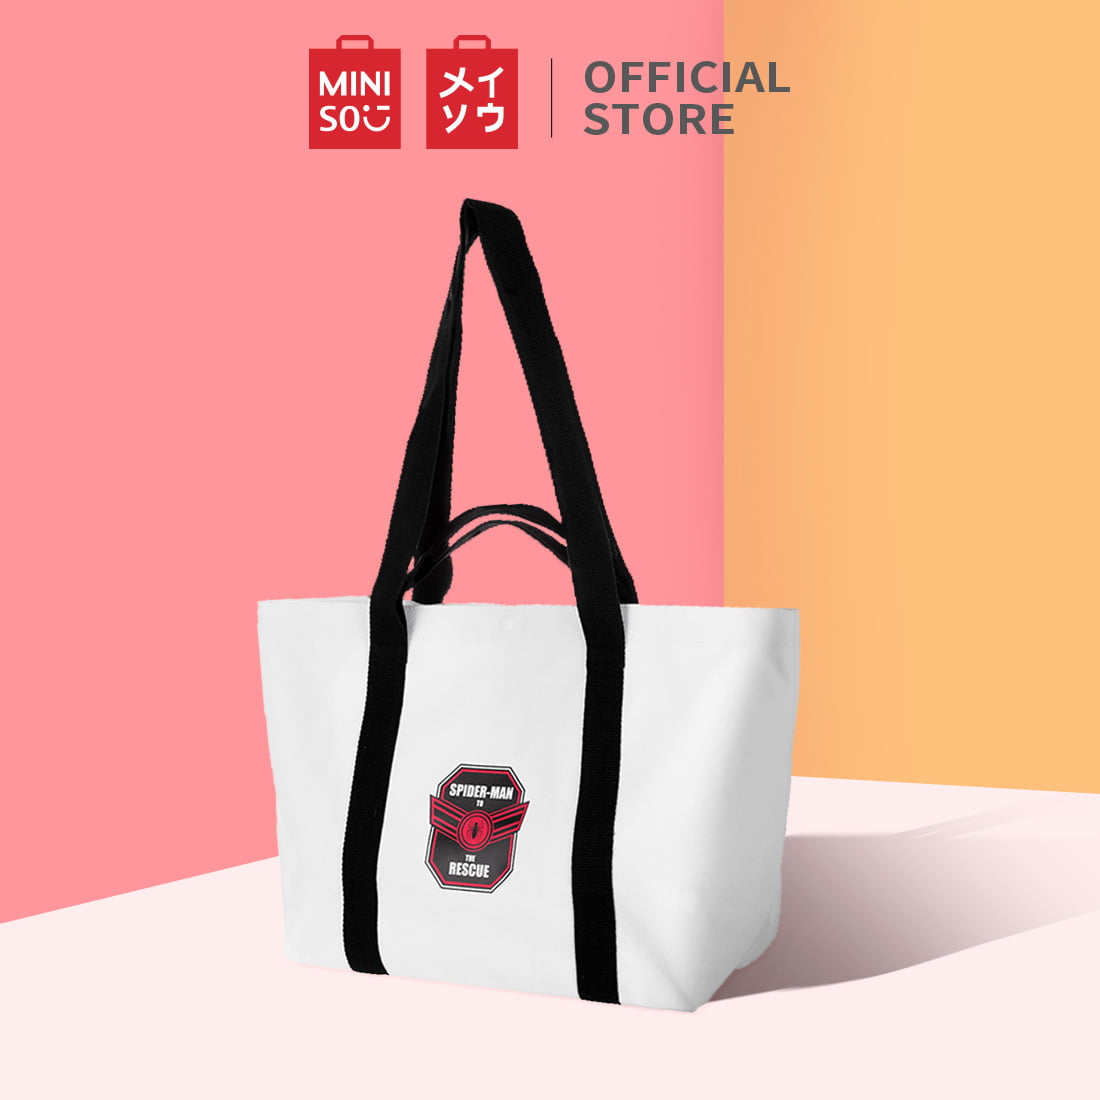 MINISO Black Shoulder Bag Marvel Shoulder Bag Tote Large Capacity Messenger  Bag Black - Price in India